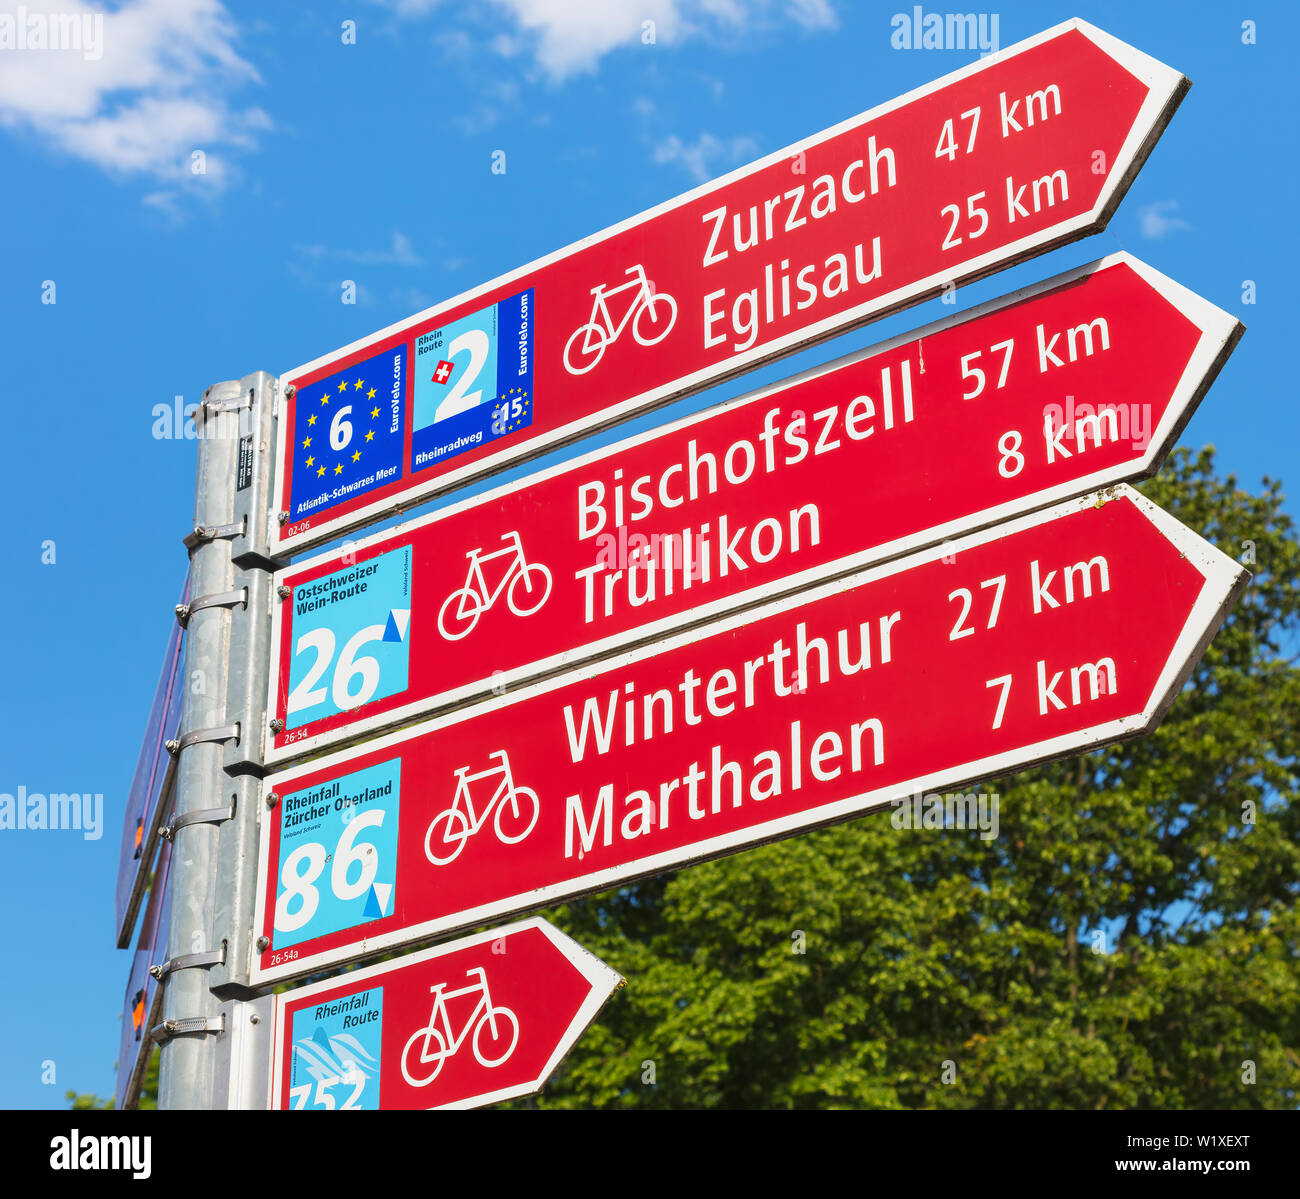 Laufen-Uhwiesen, Svizzera - 7 Giugno 2019: un segno direzionale che mostra le direzioni e le distanze per alcune delle località più vicina. È Laufen-Uhwiesen Foto Stock